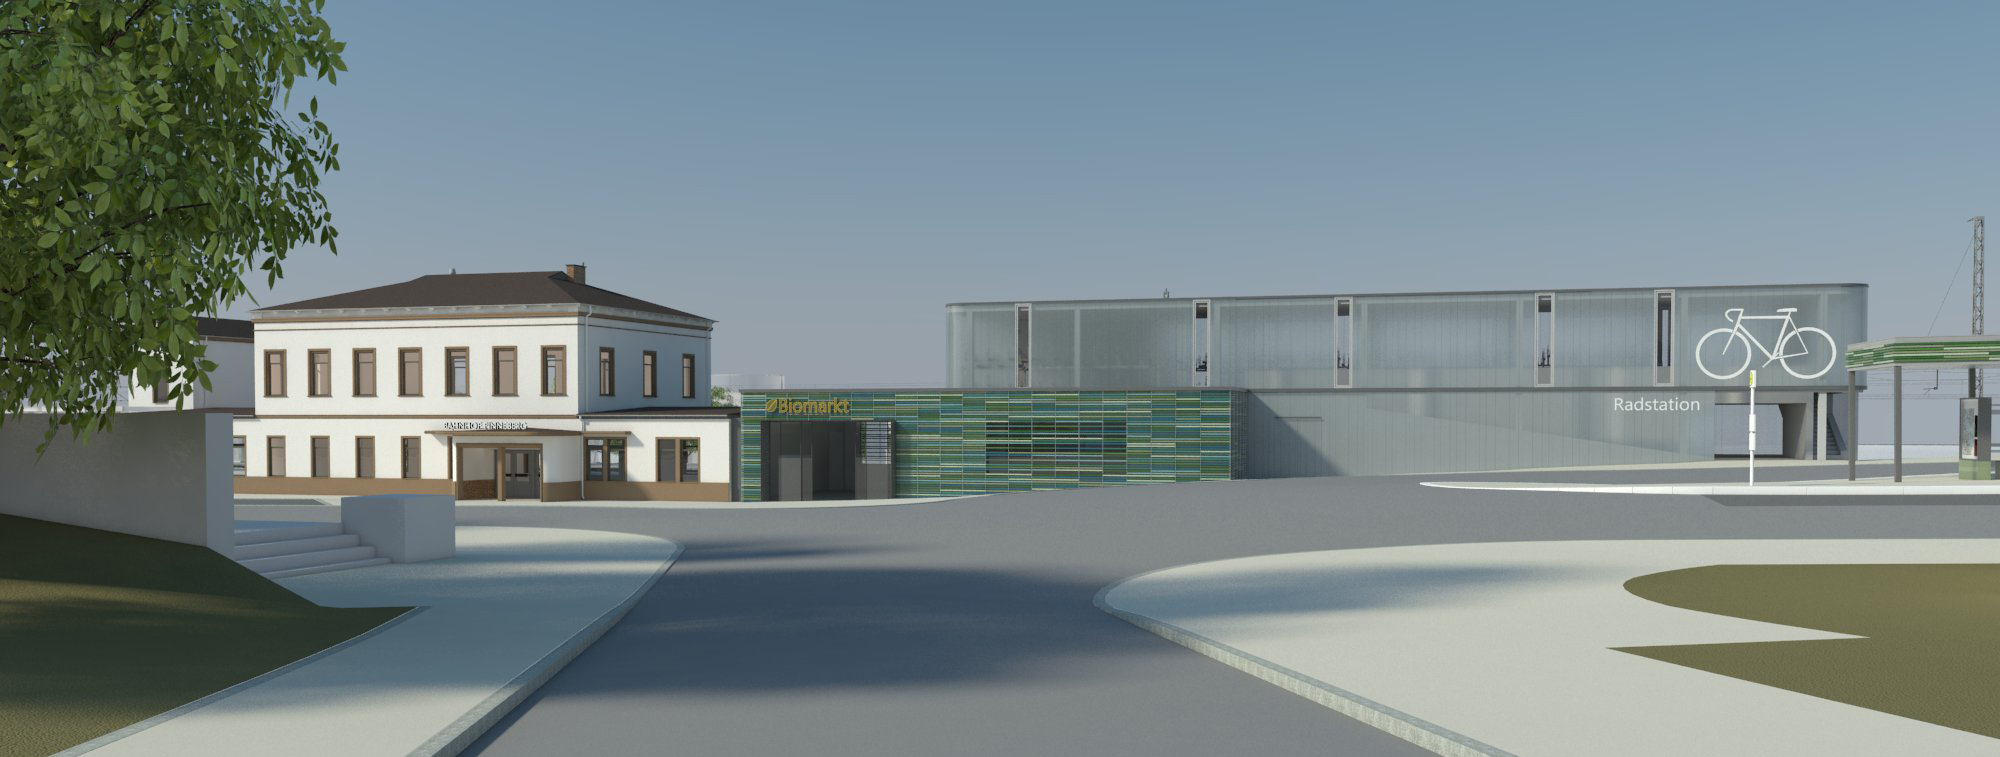 In Kombination mit der Funktion Nahversorgung befindet sich die Fahrradstation in Verlängerung des Empfangsgebäudes (Visualisierung)